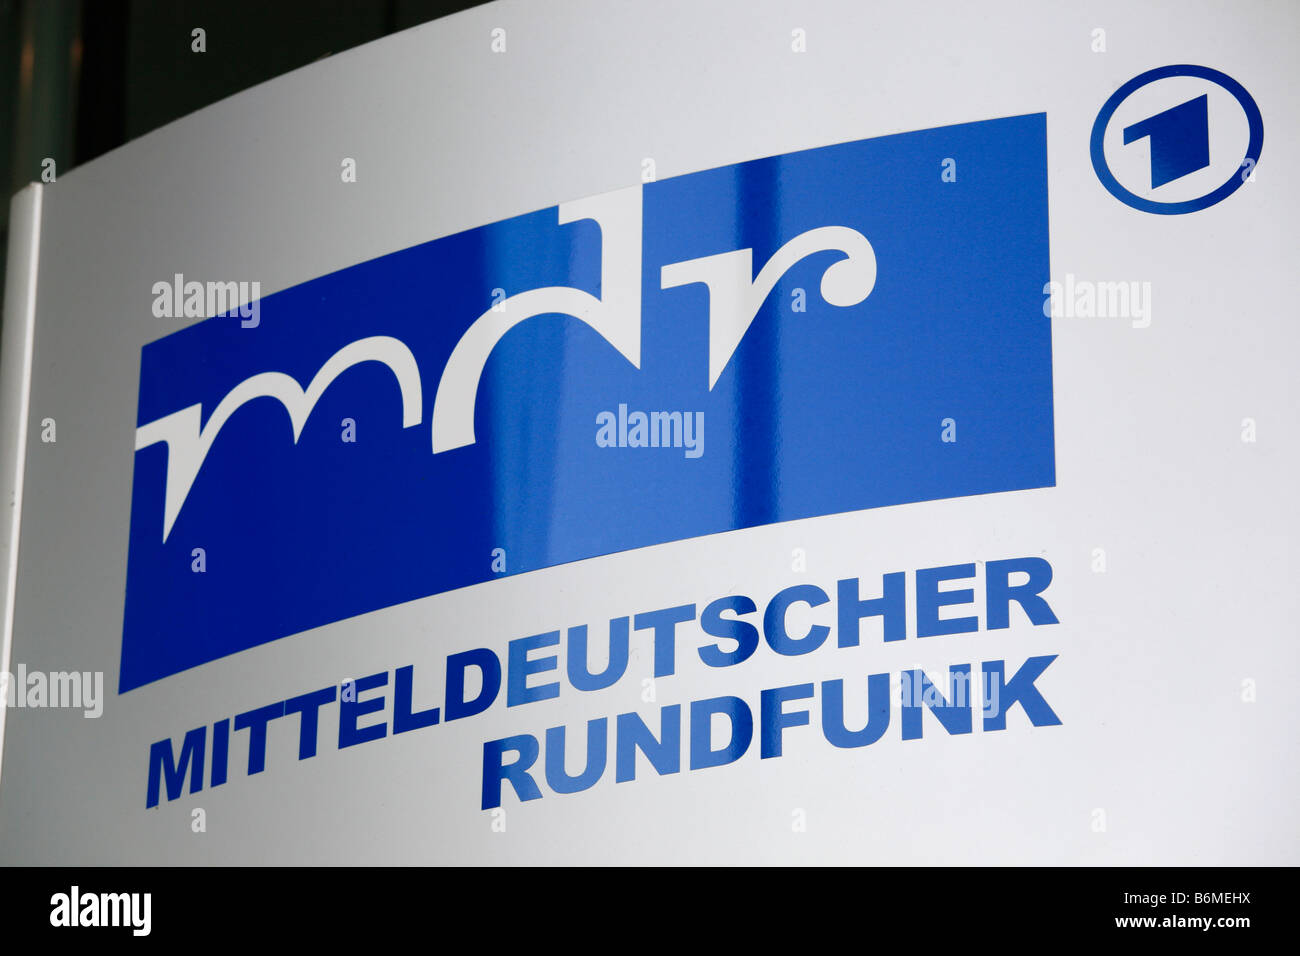 mdr, Mitteldeutscher Rundfunk, Halle (Saale), Germany Stock Photo